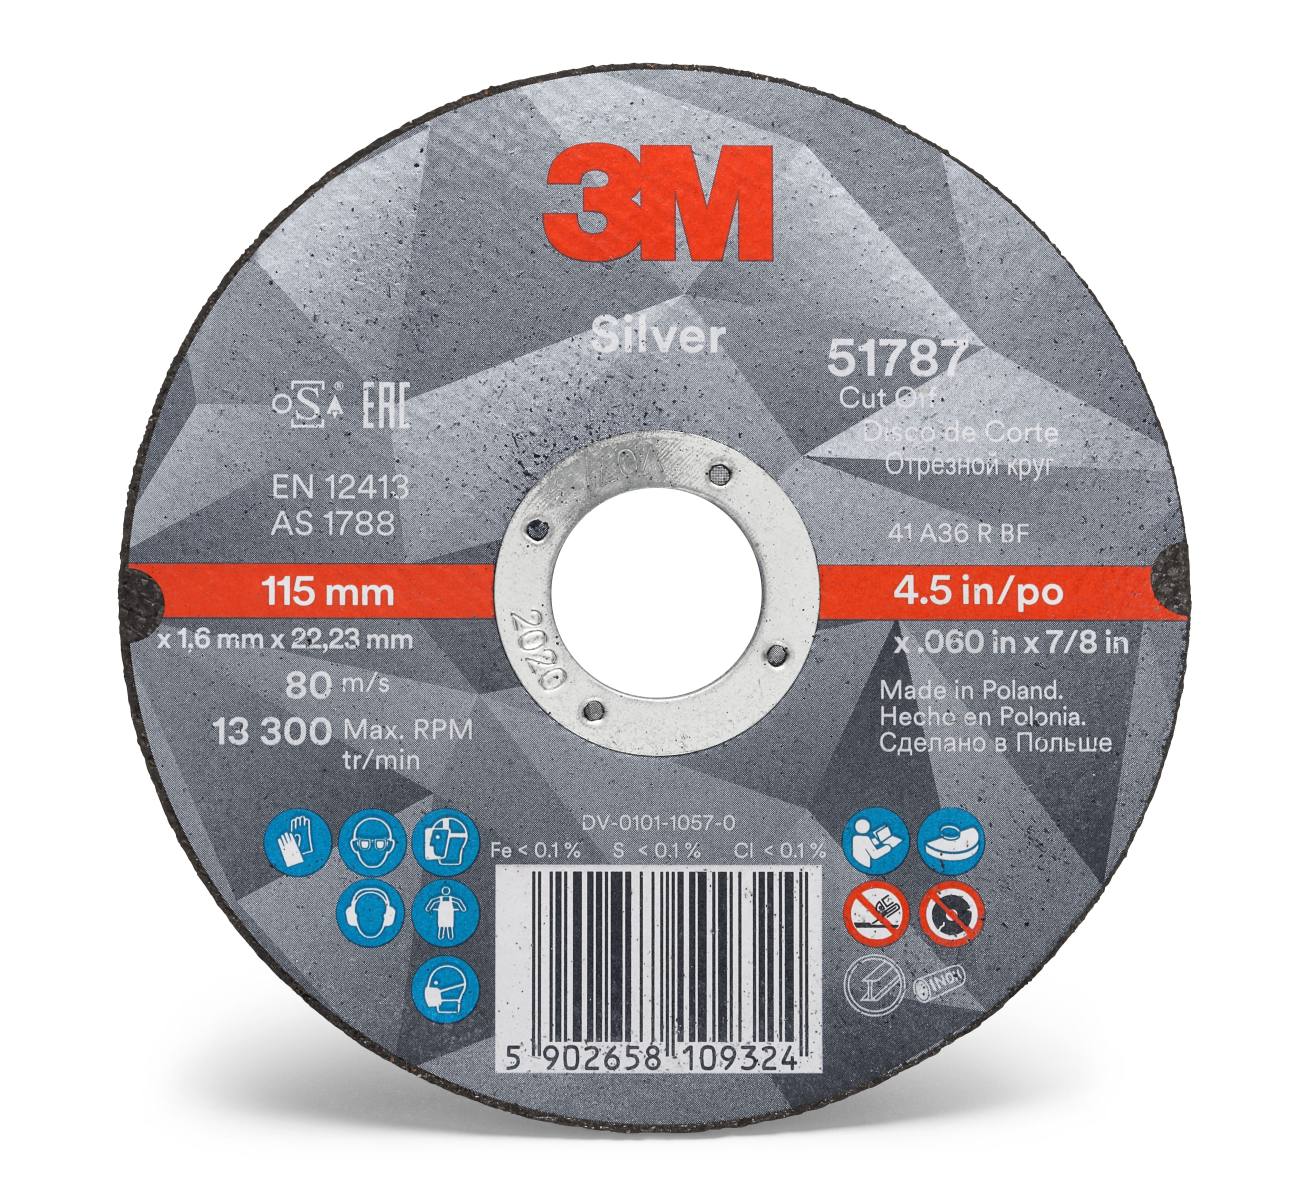 3M Silver Cut-Off Wheel Disque à tronçonner, 100 mm, 1,3 mm, 16 mm, T41, 51776